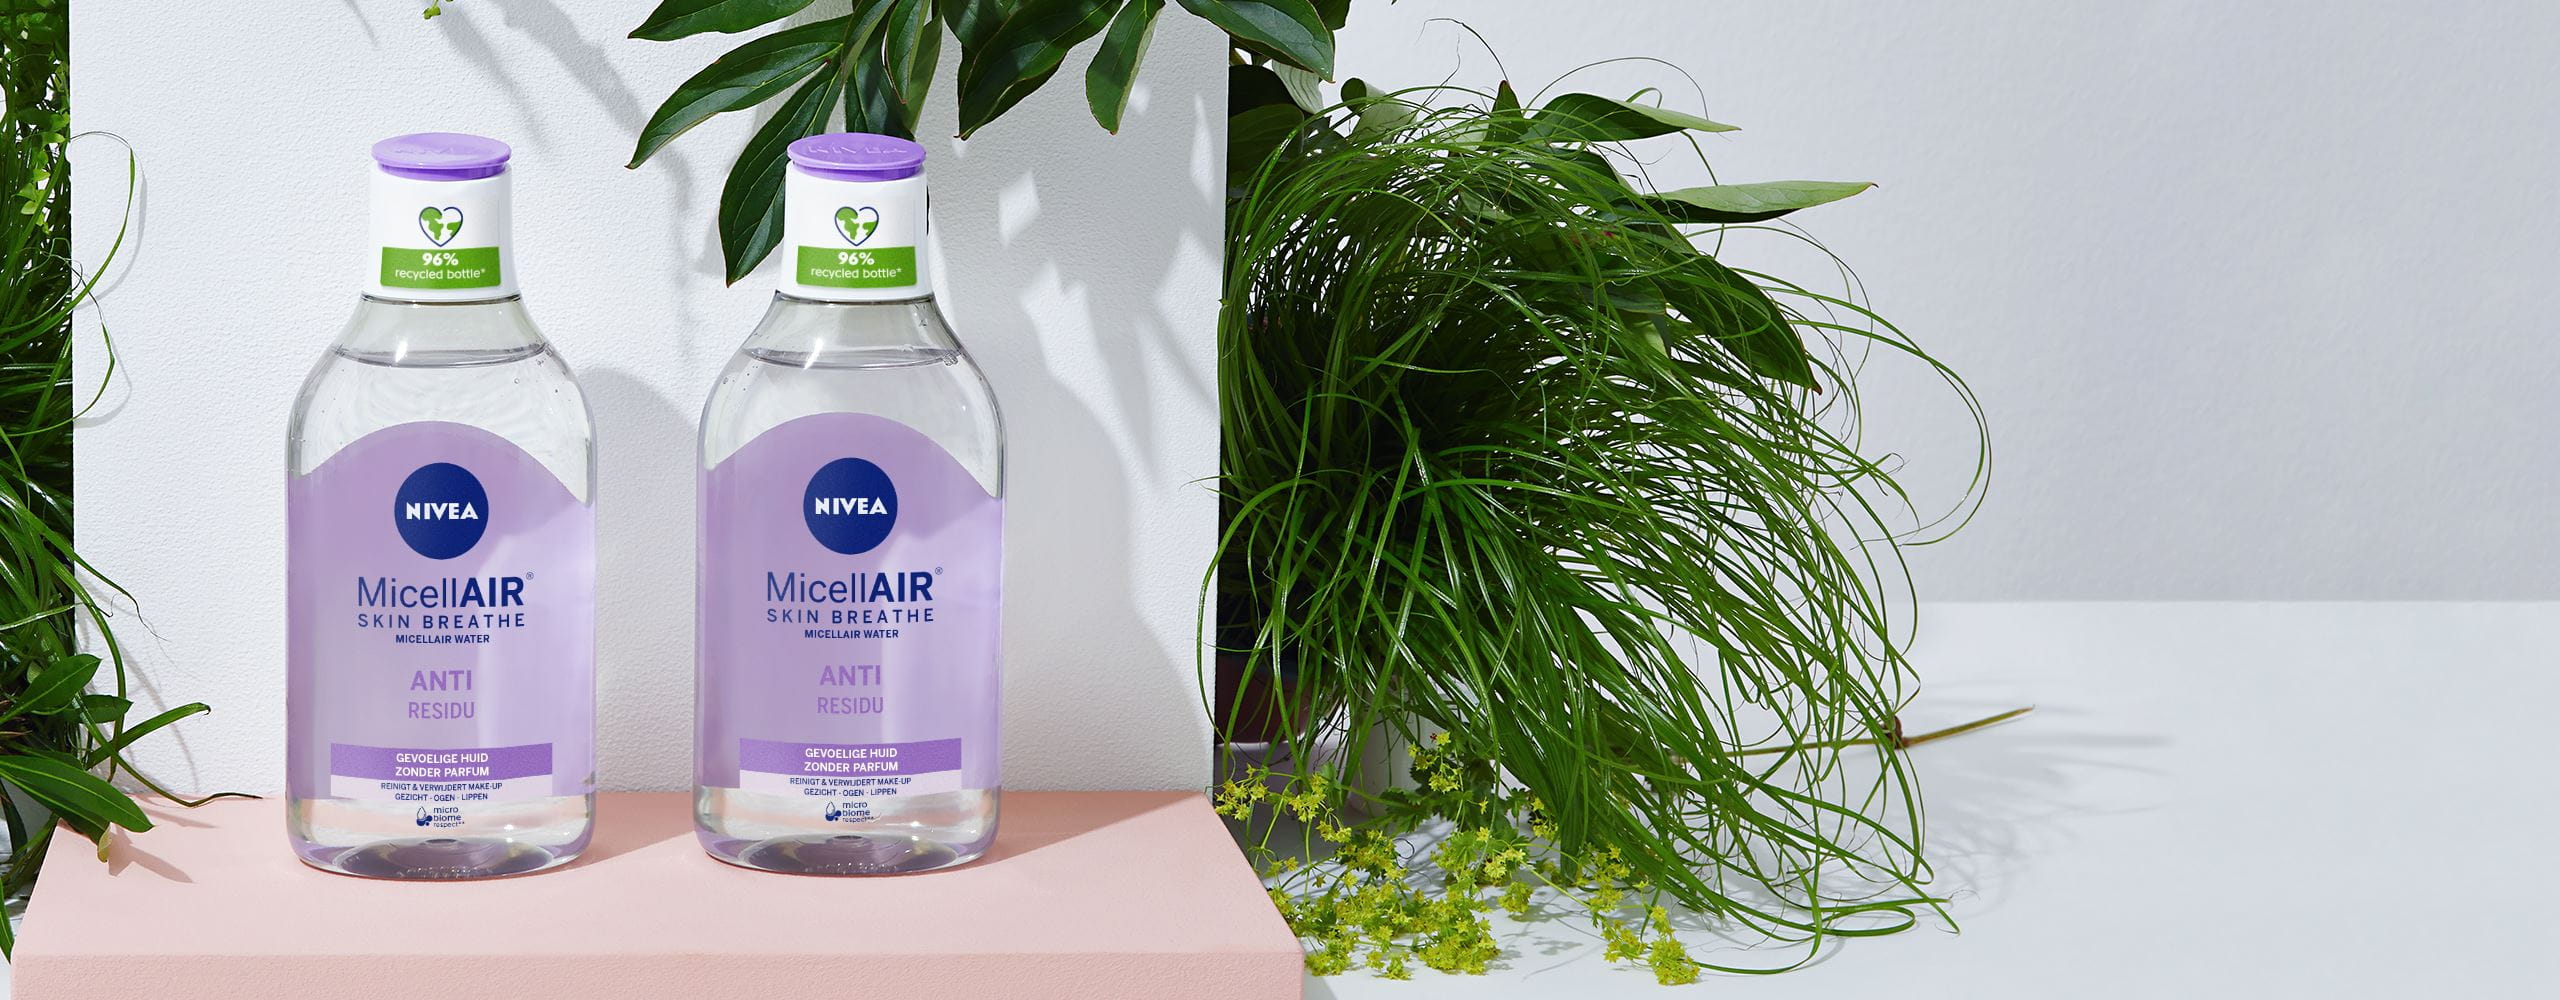 NIVEA MicellAIR® Skin Breathe-flessen gemaakt van 96% gerecycled plastic